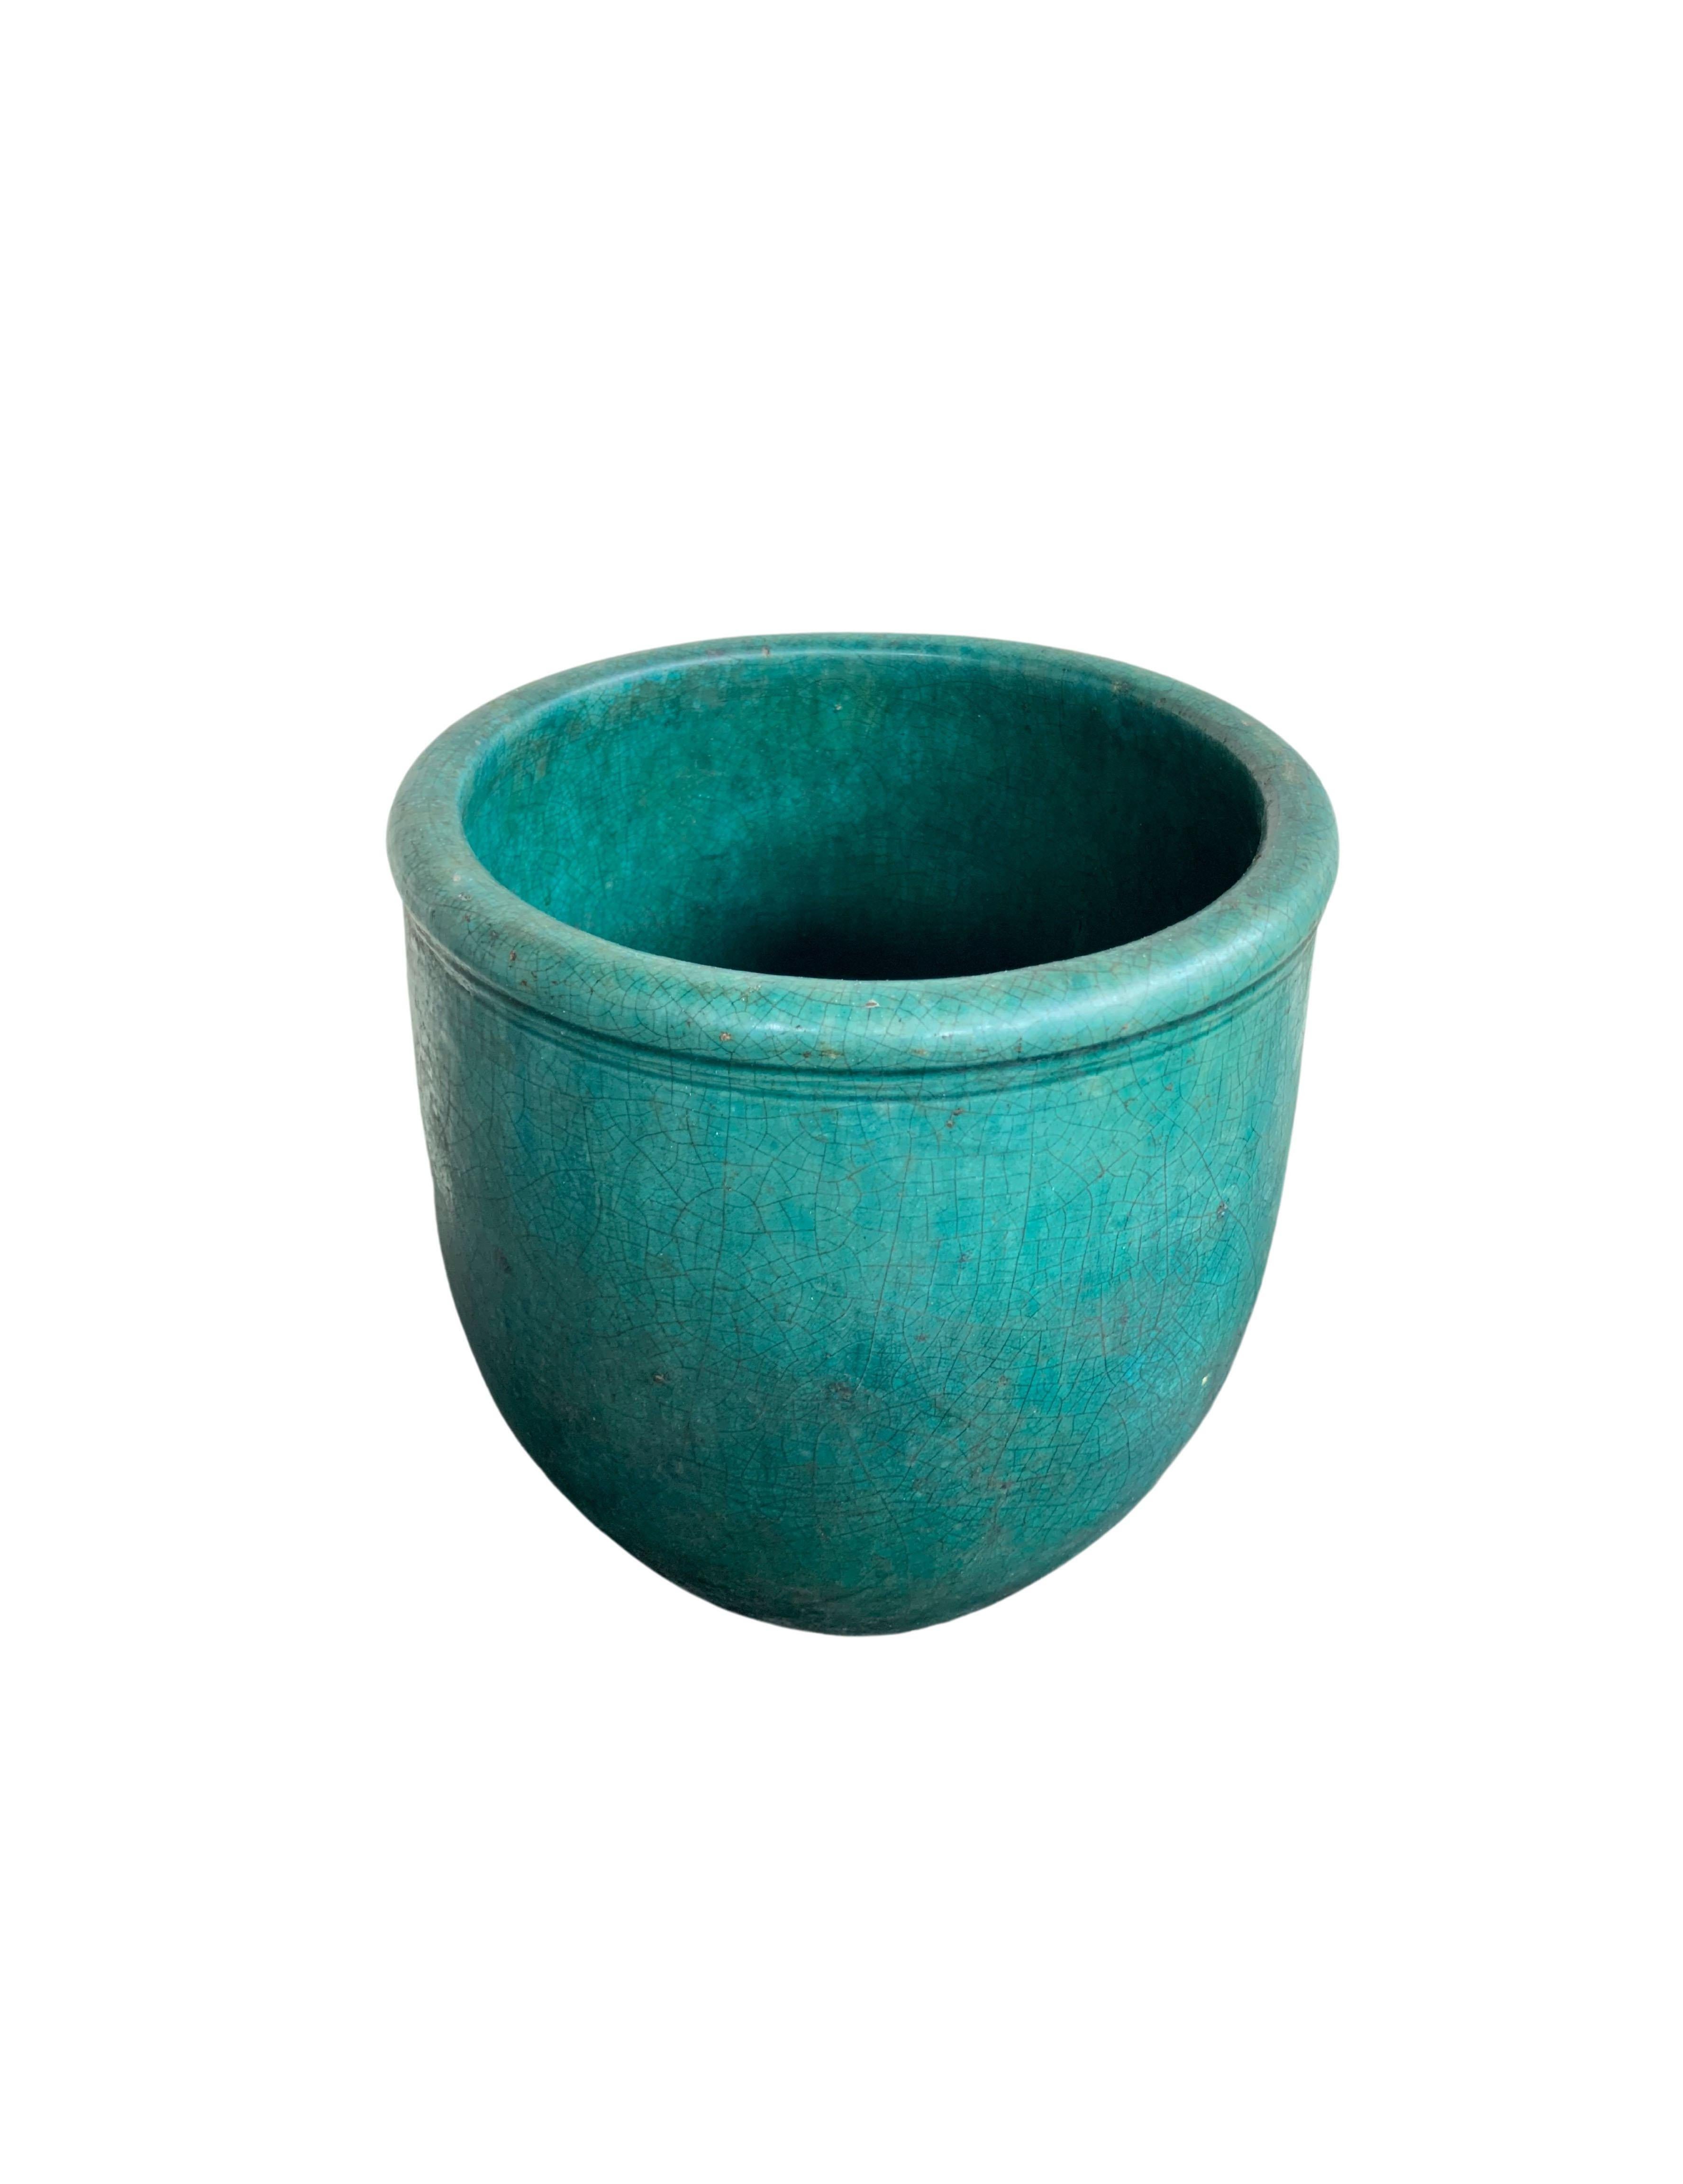 Une merveilleuse glaçure bleu-vert orne ce pot de rangement chinois du début du 20e siècle, ainsi qu'une étonnante finition craquelée. Les jarres de ce type étaient utilisées pour stocker les céréales dans les maisons. De nos jours, il pourrait